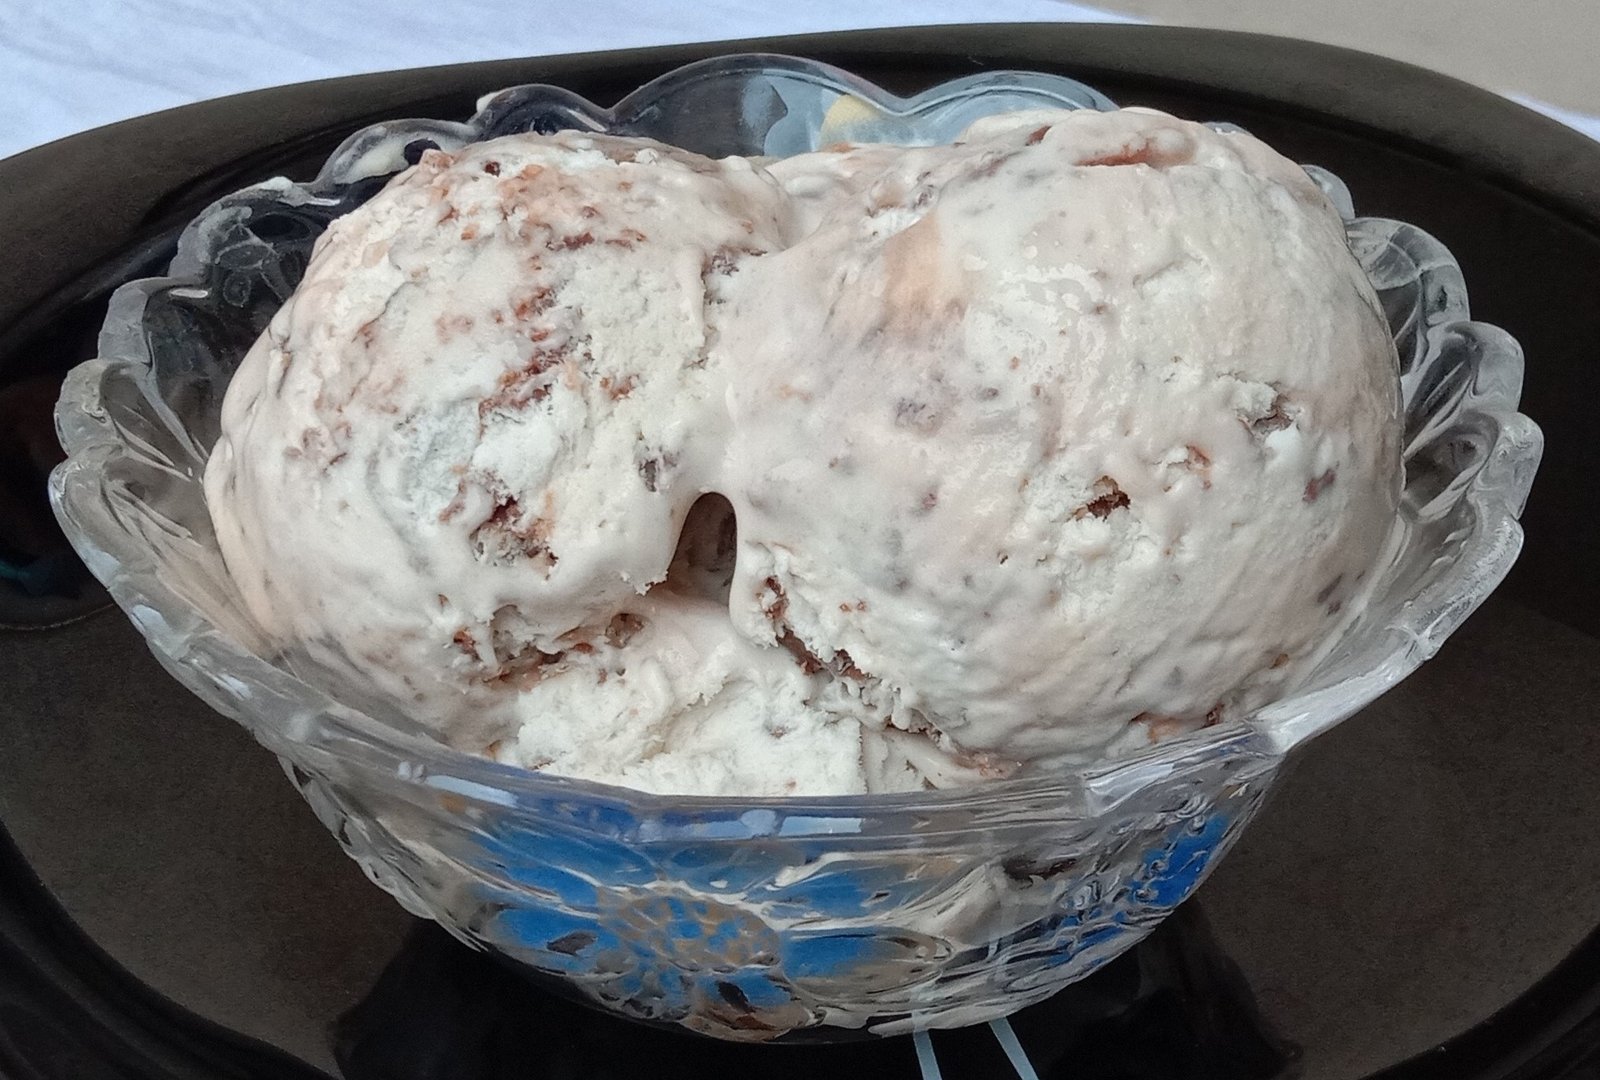 Kit kat Ice cream in bowl, Kit kat Ice cream